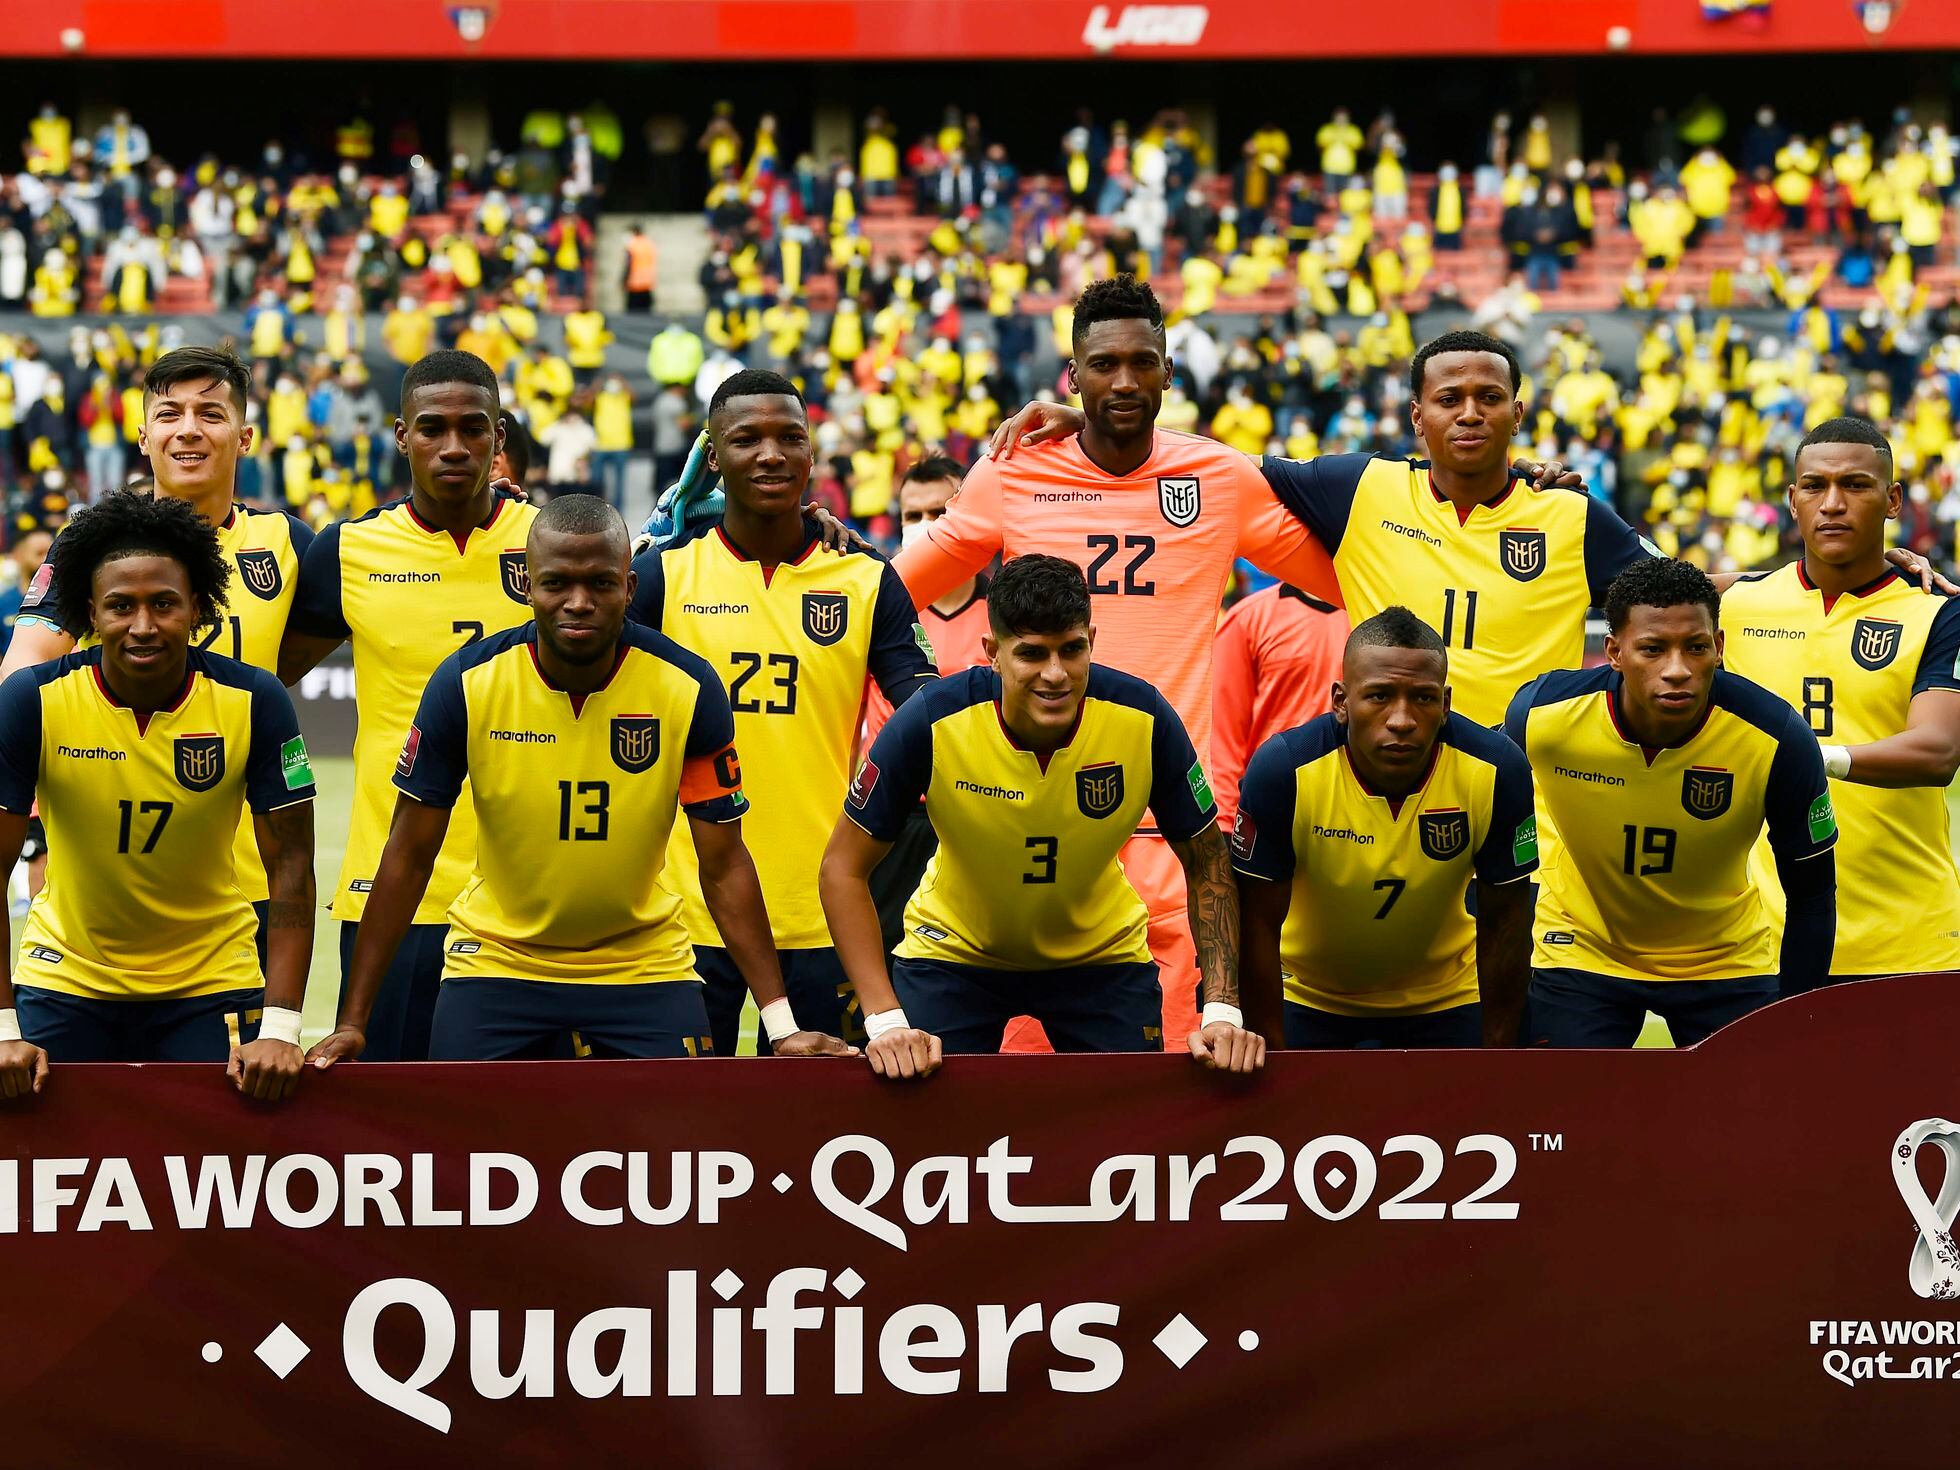 ¿Cómo queda Ecuador en el Mundial 2022